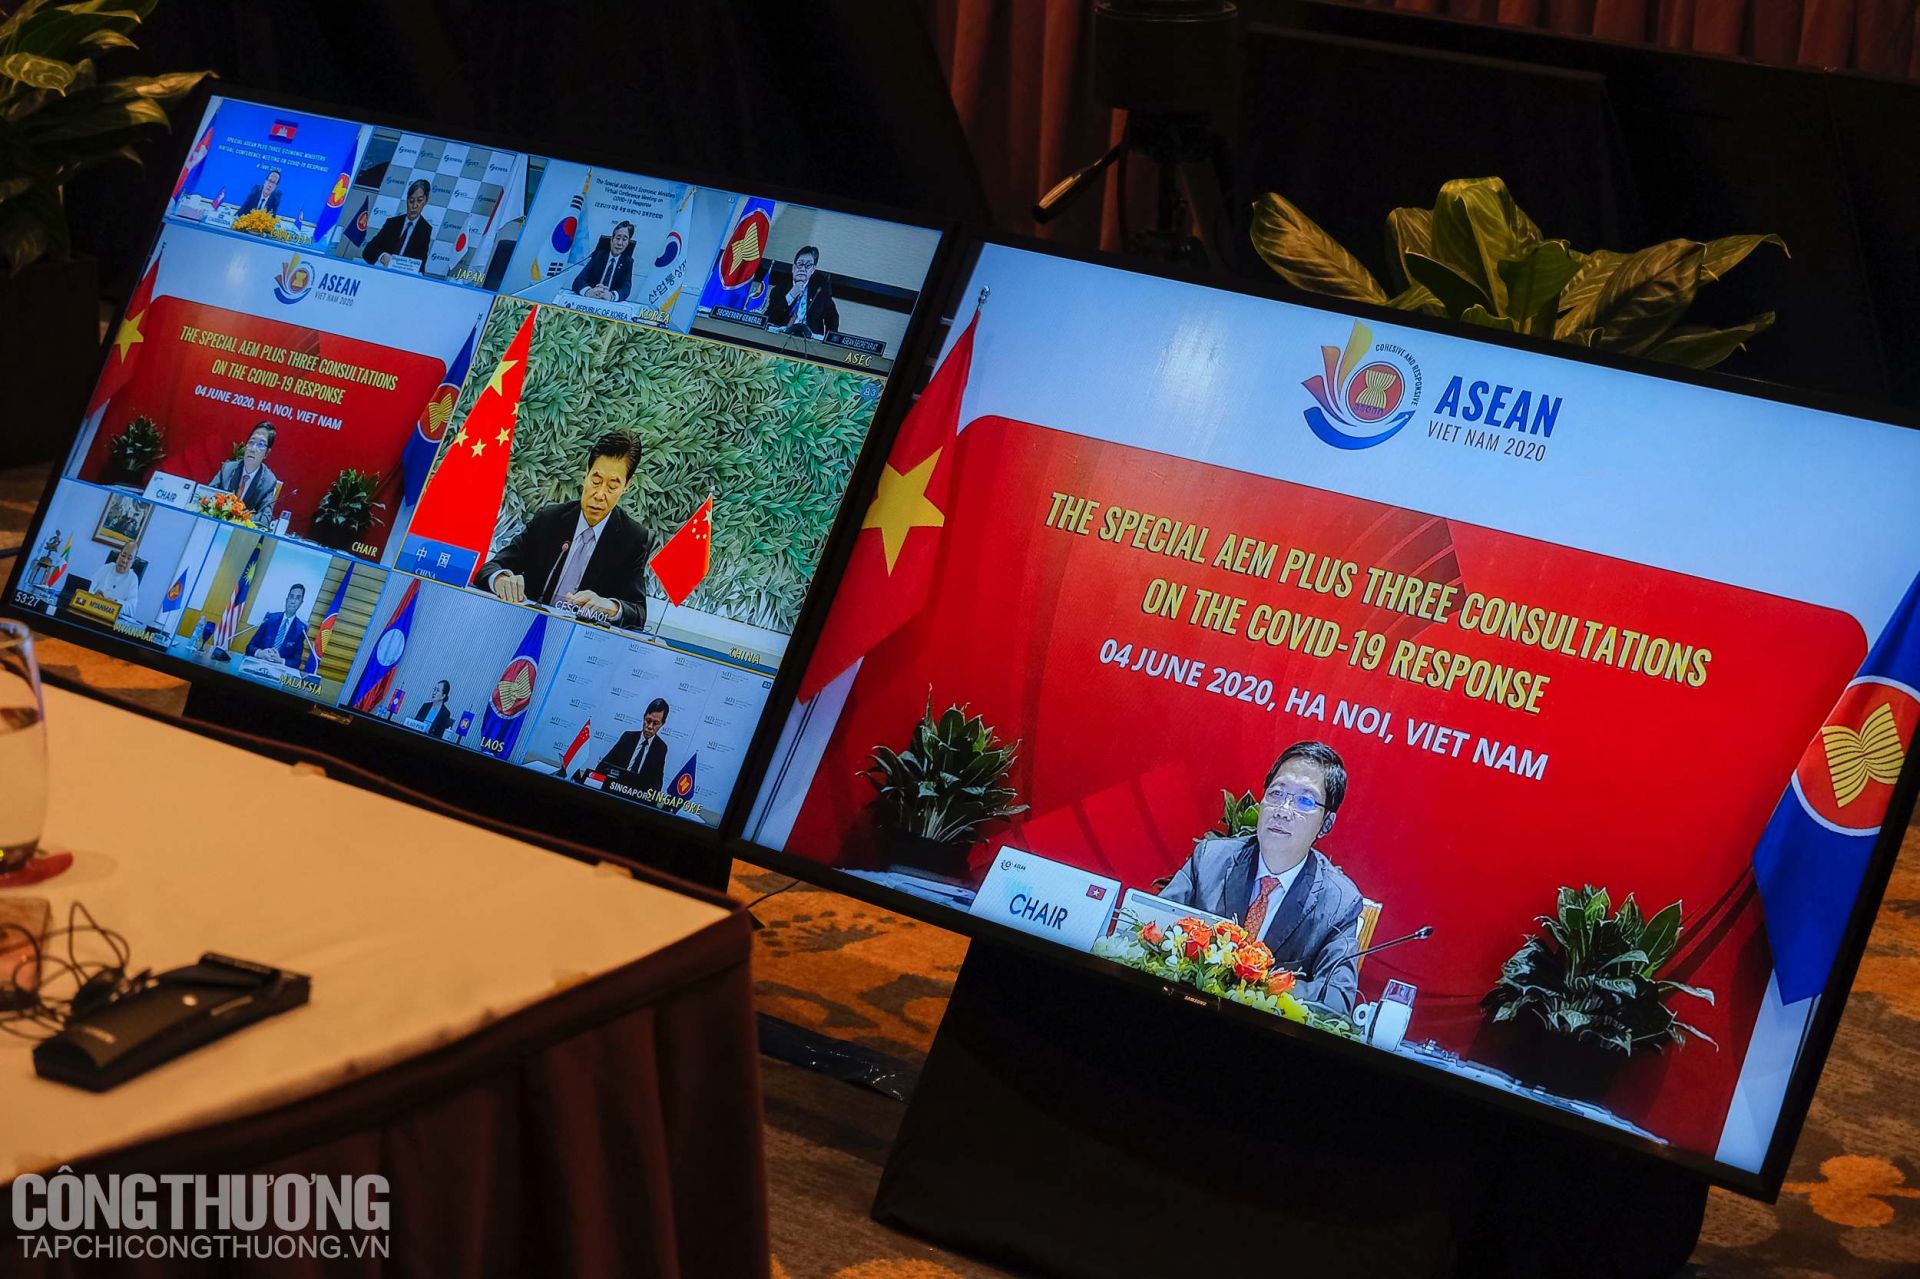 Hội nghị Bộ trưởng Kinh tế ASEAN+3 trực tuyến đặc biệt chiều 4/6 đưa ra Tuyên bố chung của ASEAN+3 về giảm thiểu tác động kinh tế trong bối cảnh dịch bệnh Covid-19